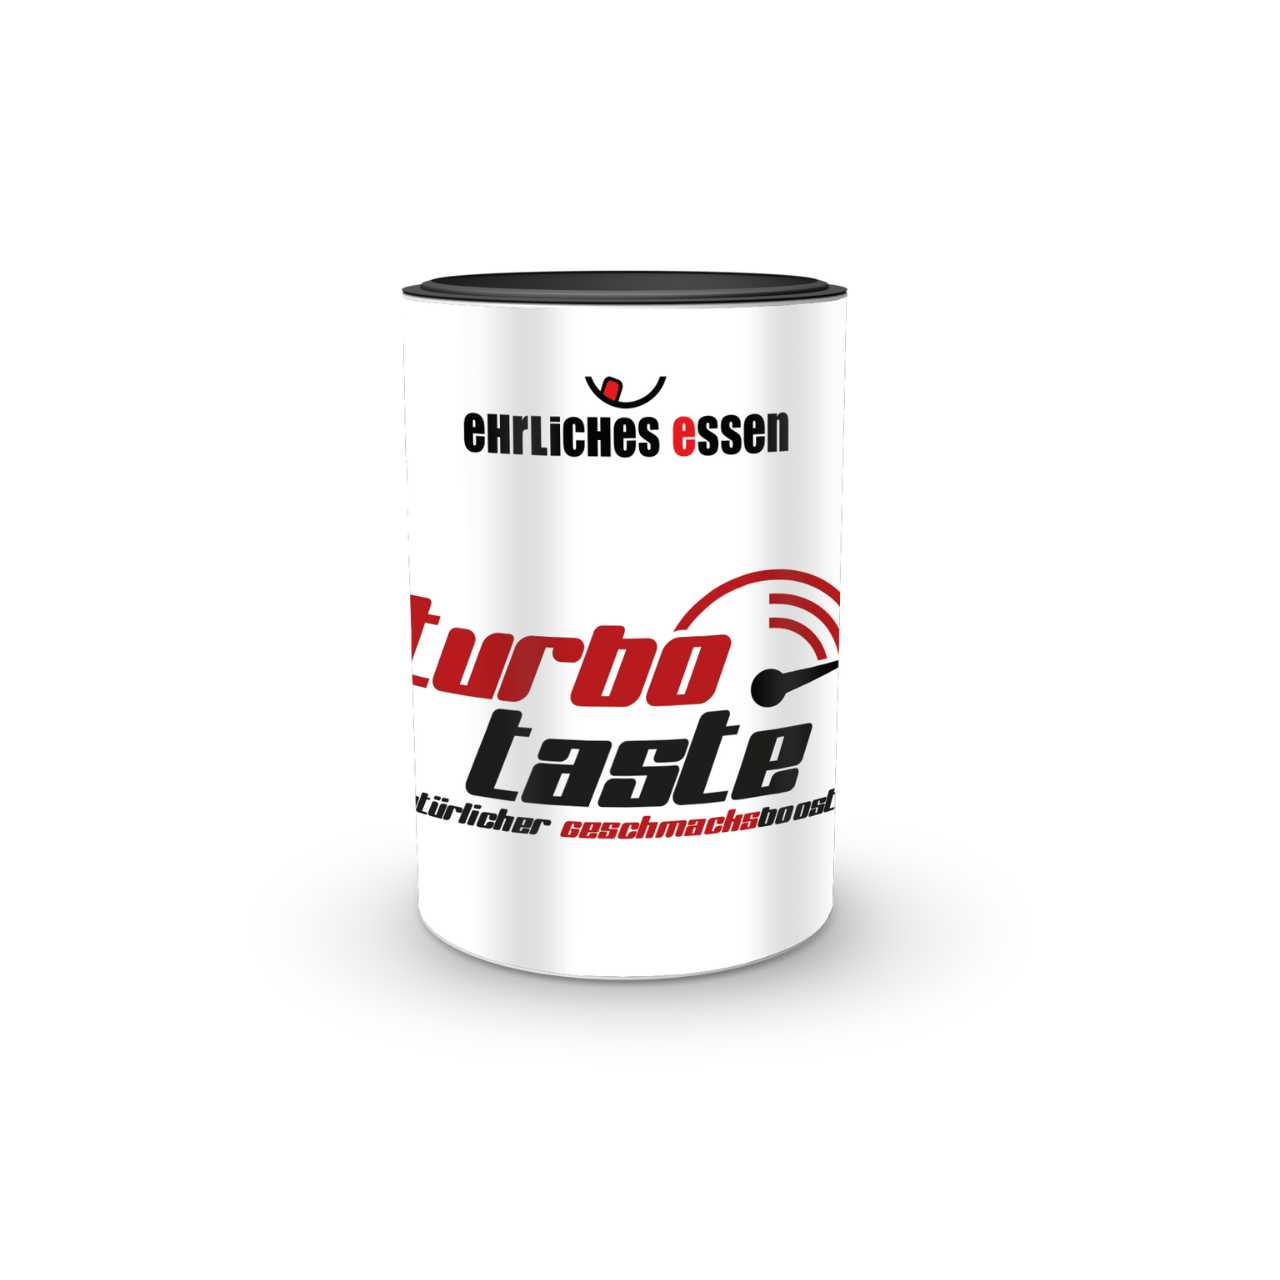 ehrliches essen - Turbo Taste 130g